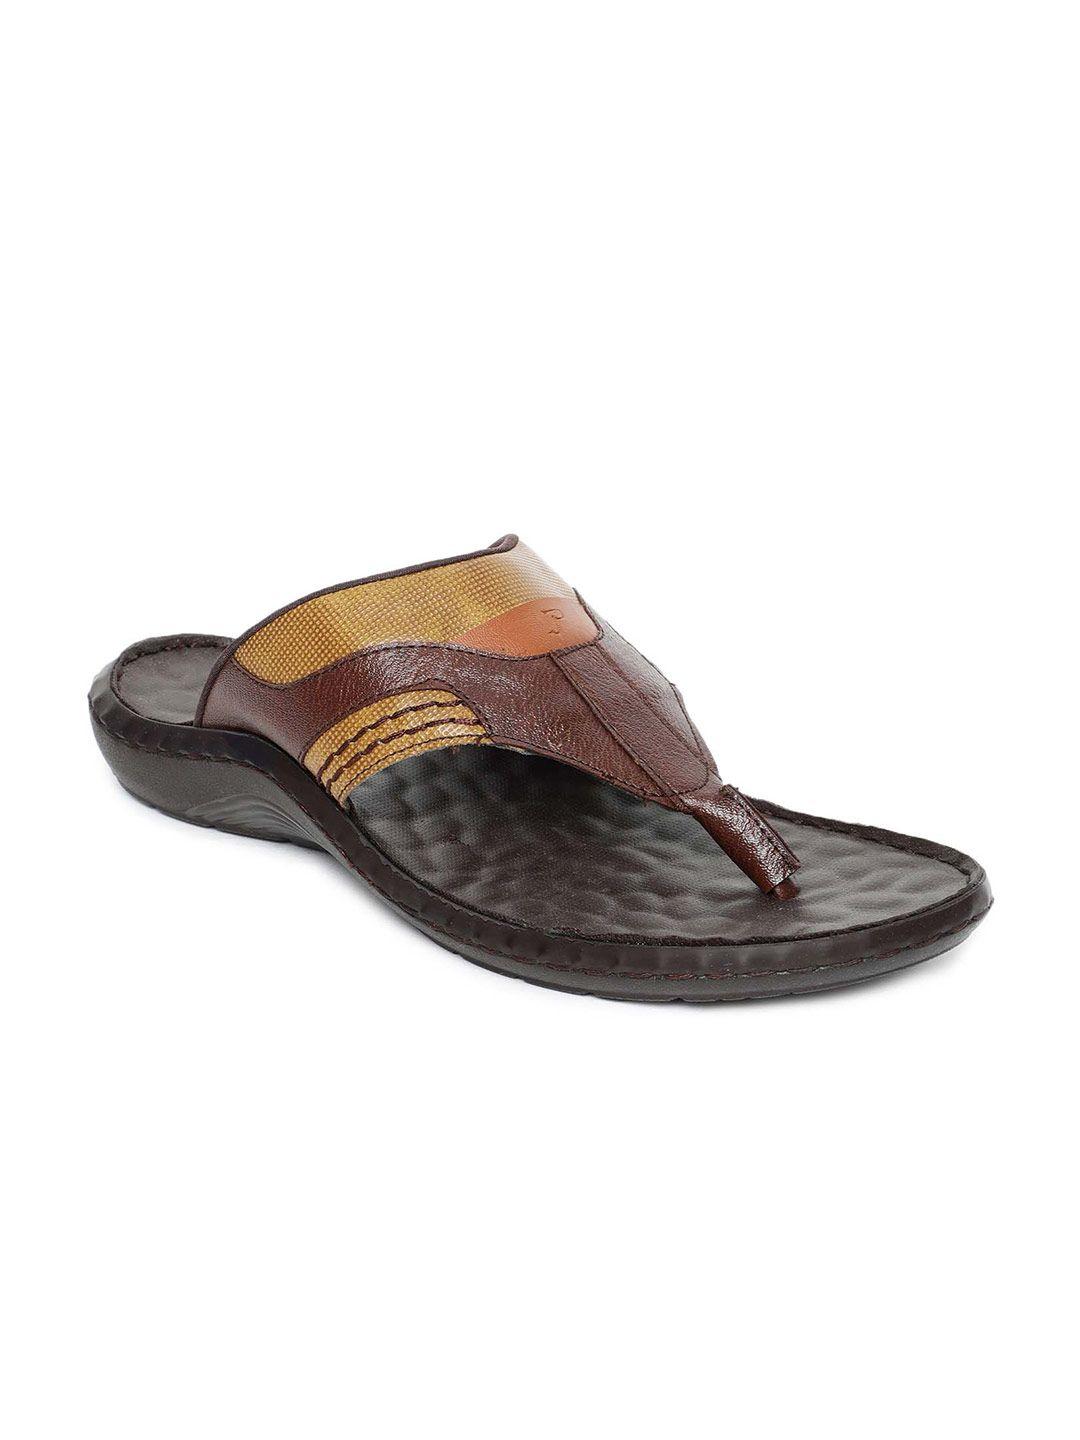 paragon-men-vertex-plus-comfort-sandals